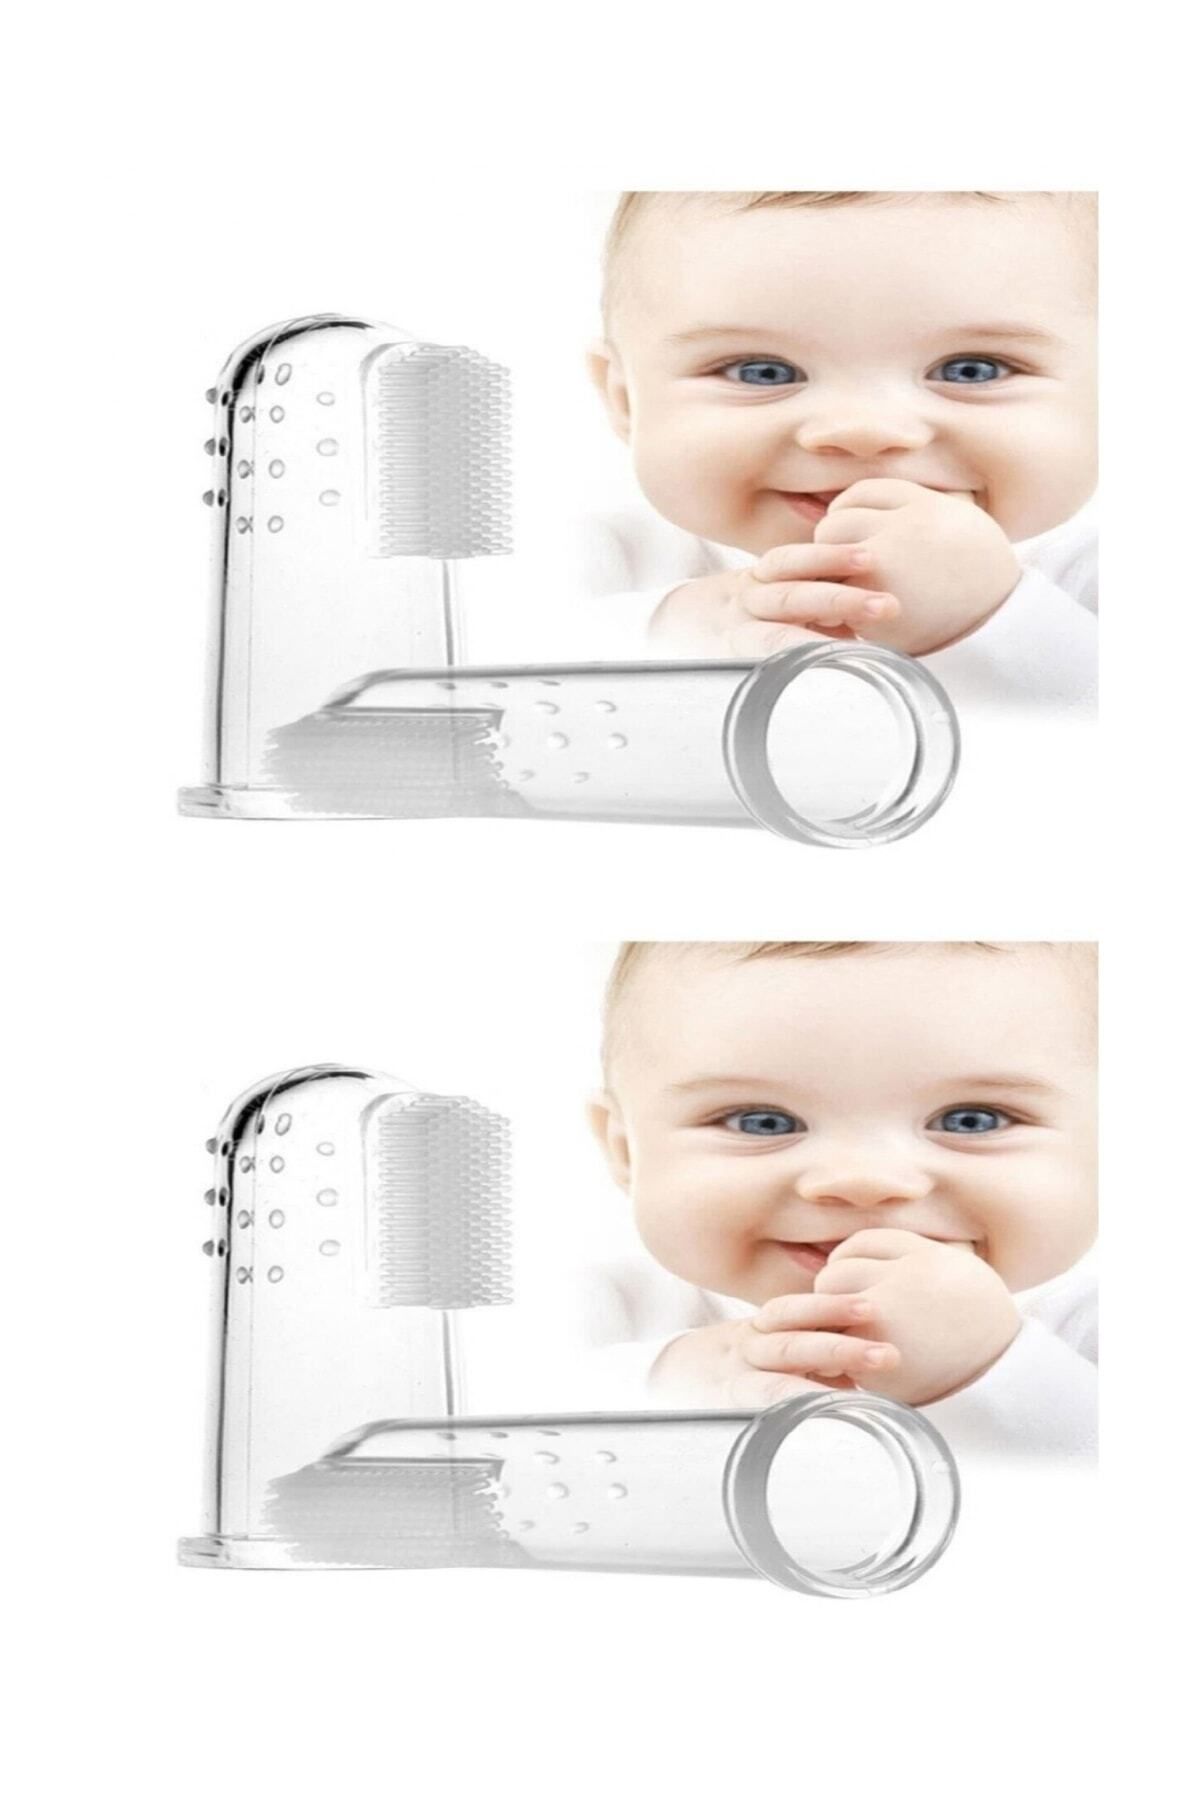 Impress 2'li Mini Bebek Çocuk Parmak Diş Fırçası Saklama Kabı 2 Adet *renk: Pembe Ve Şeffaf